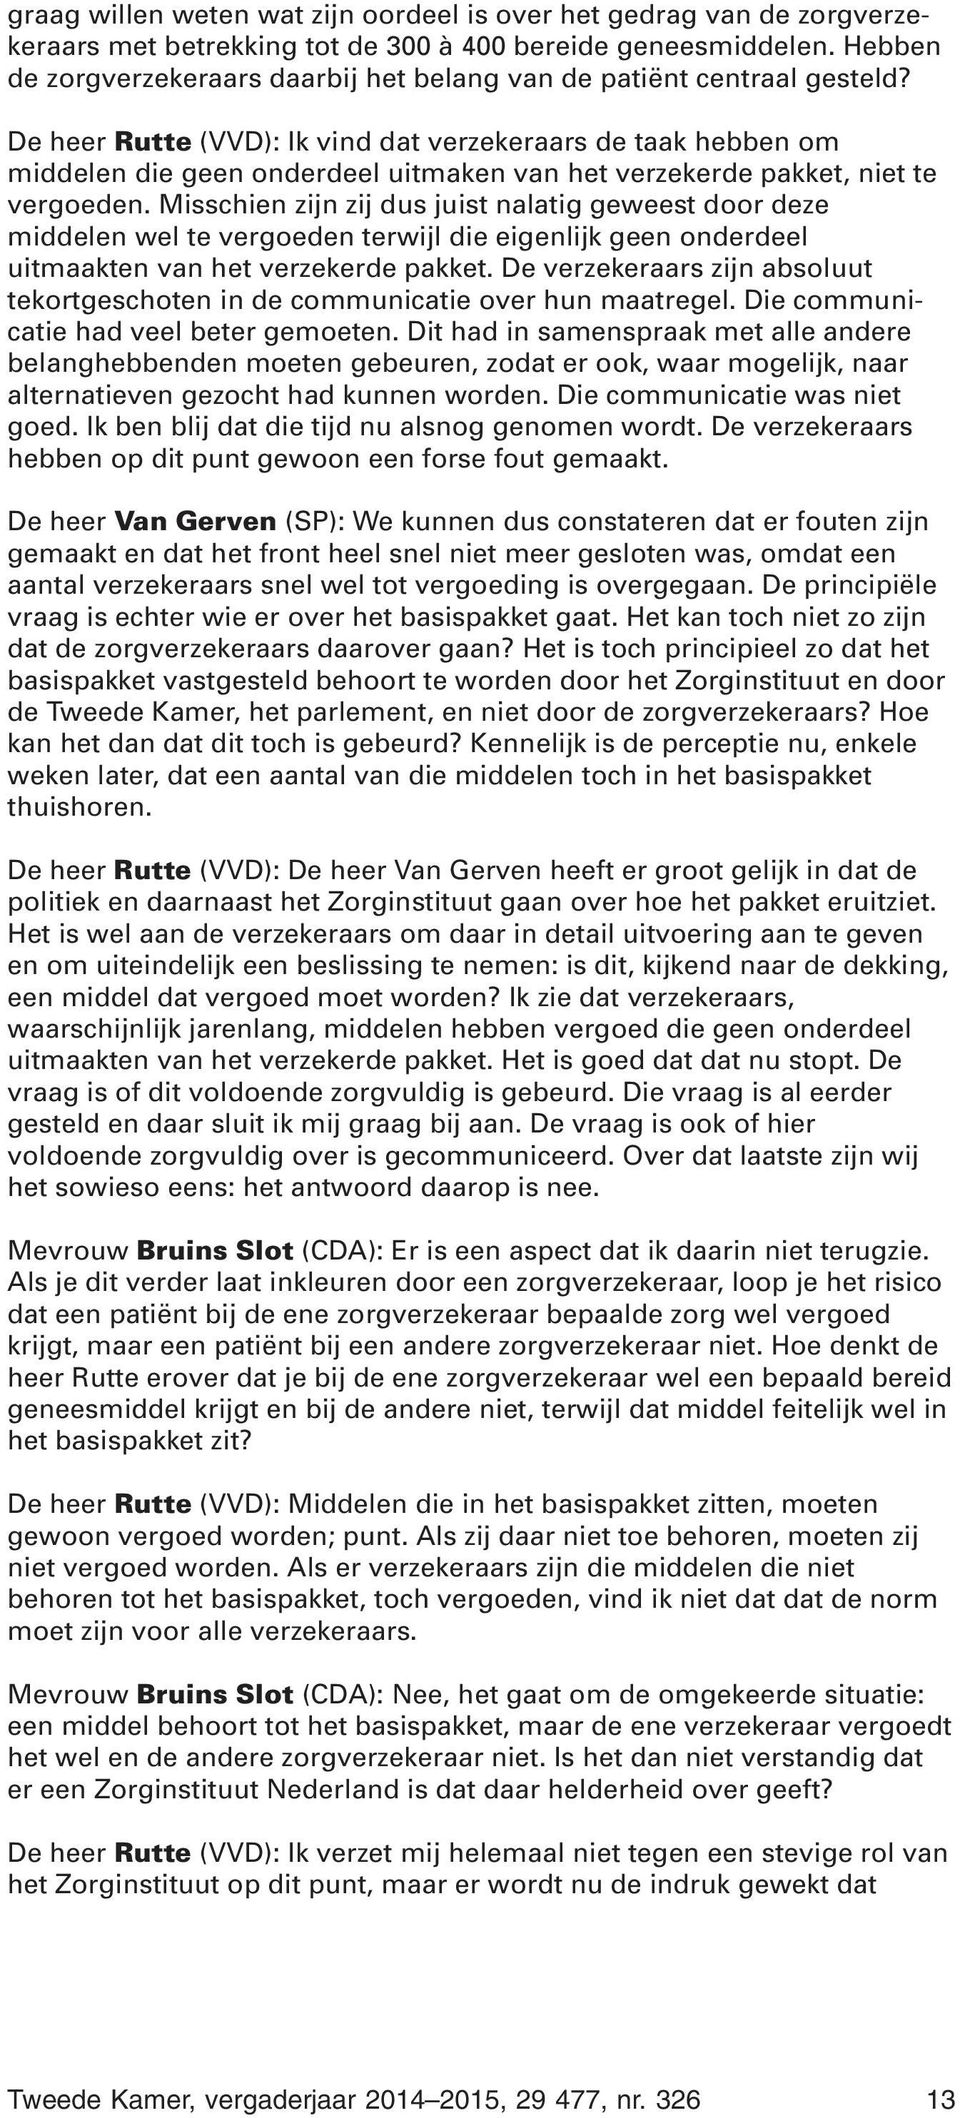 De heer Rutte (VVD): Ik vind dat verzekeraars de taak hebben om middelen die geen onderdeel uitmaken van het verzekerde pakket, niet te vergoeden.